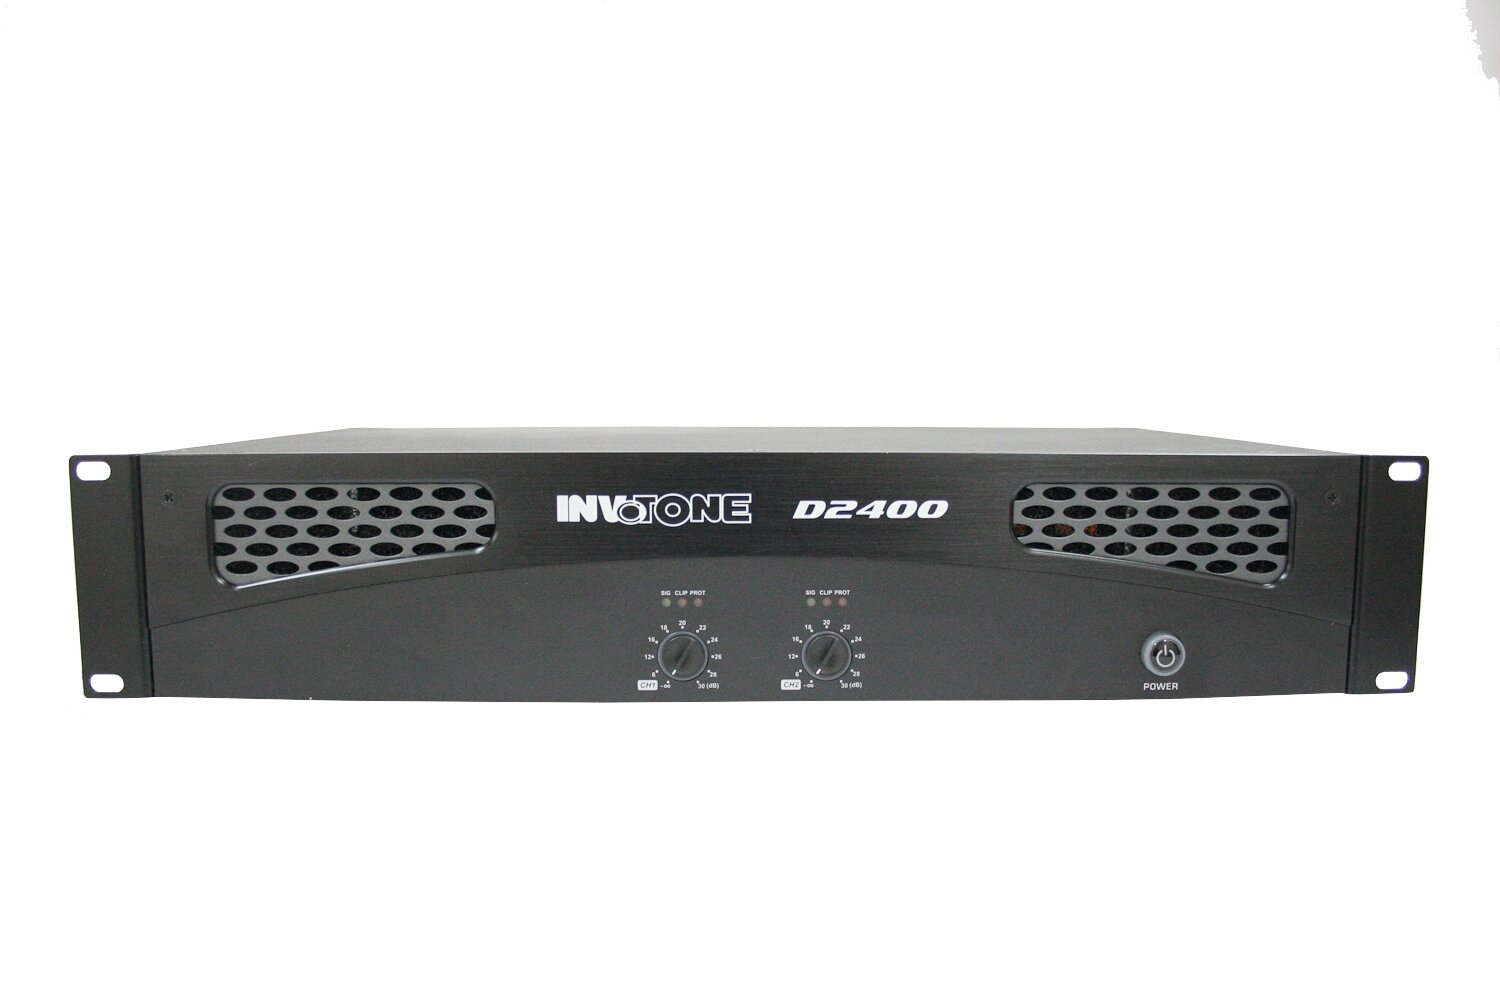 INVOTONE D2400 цифровой двухканальный усилитель мощности, 2x240 Вт RMS/8 Ом, 2x400 Вт RMS/4 Ом